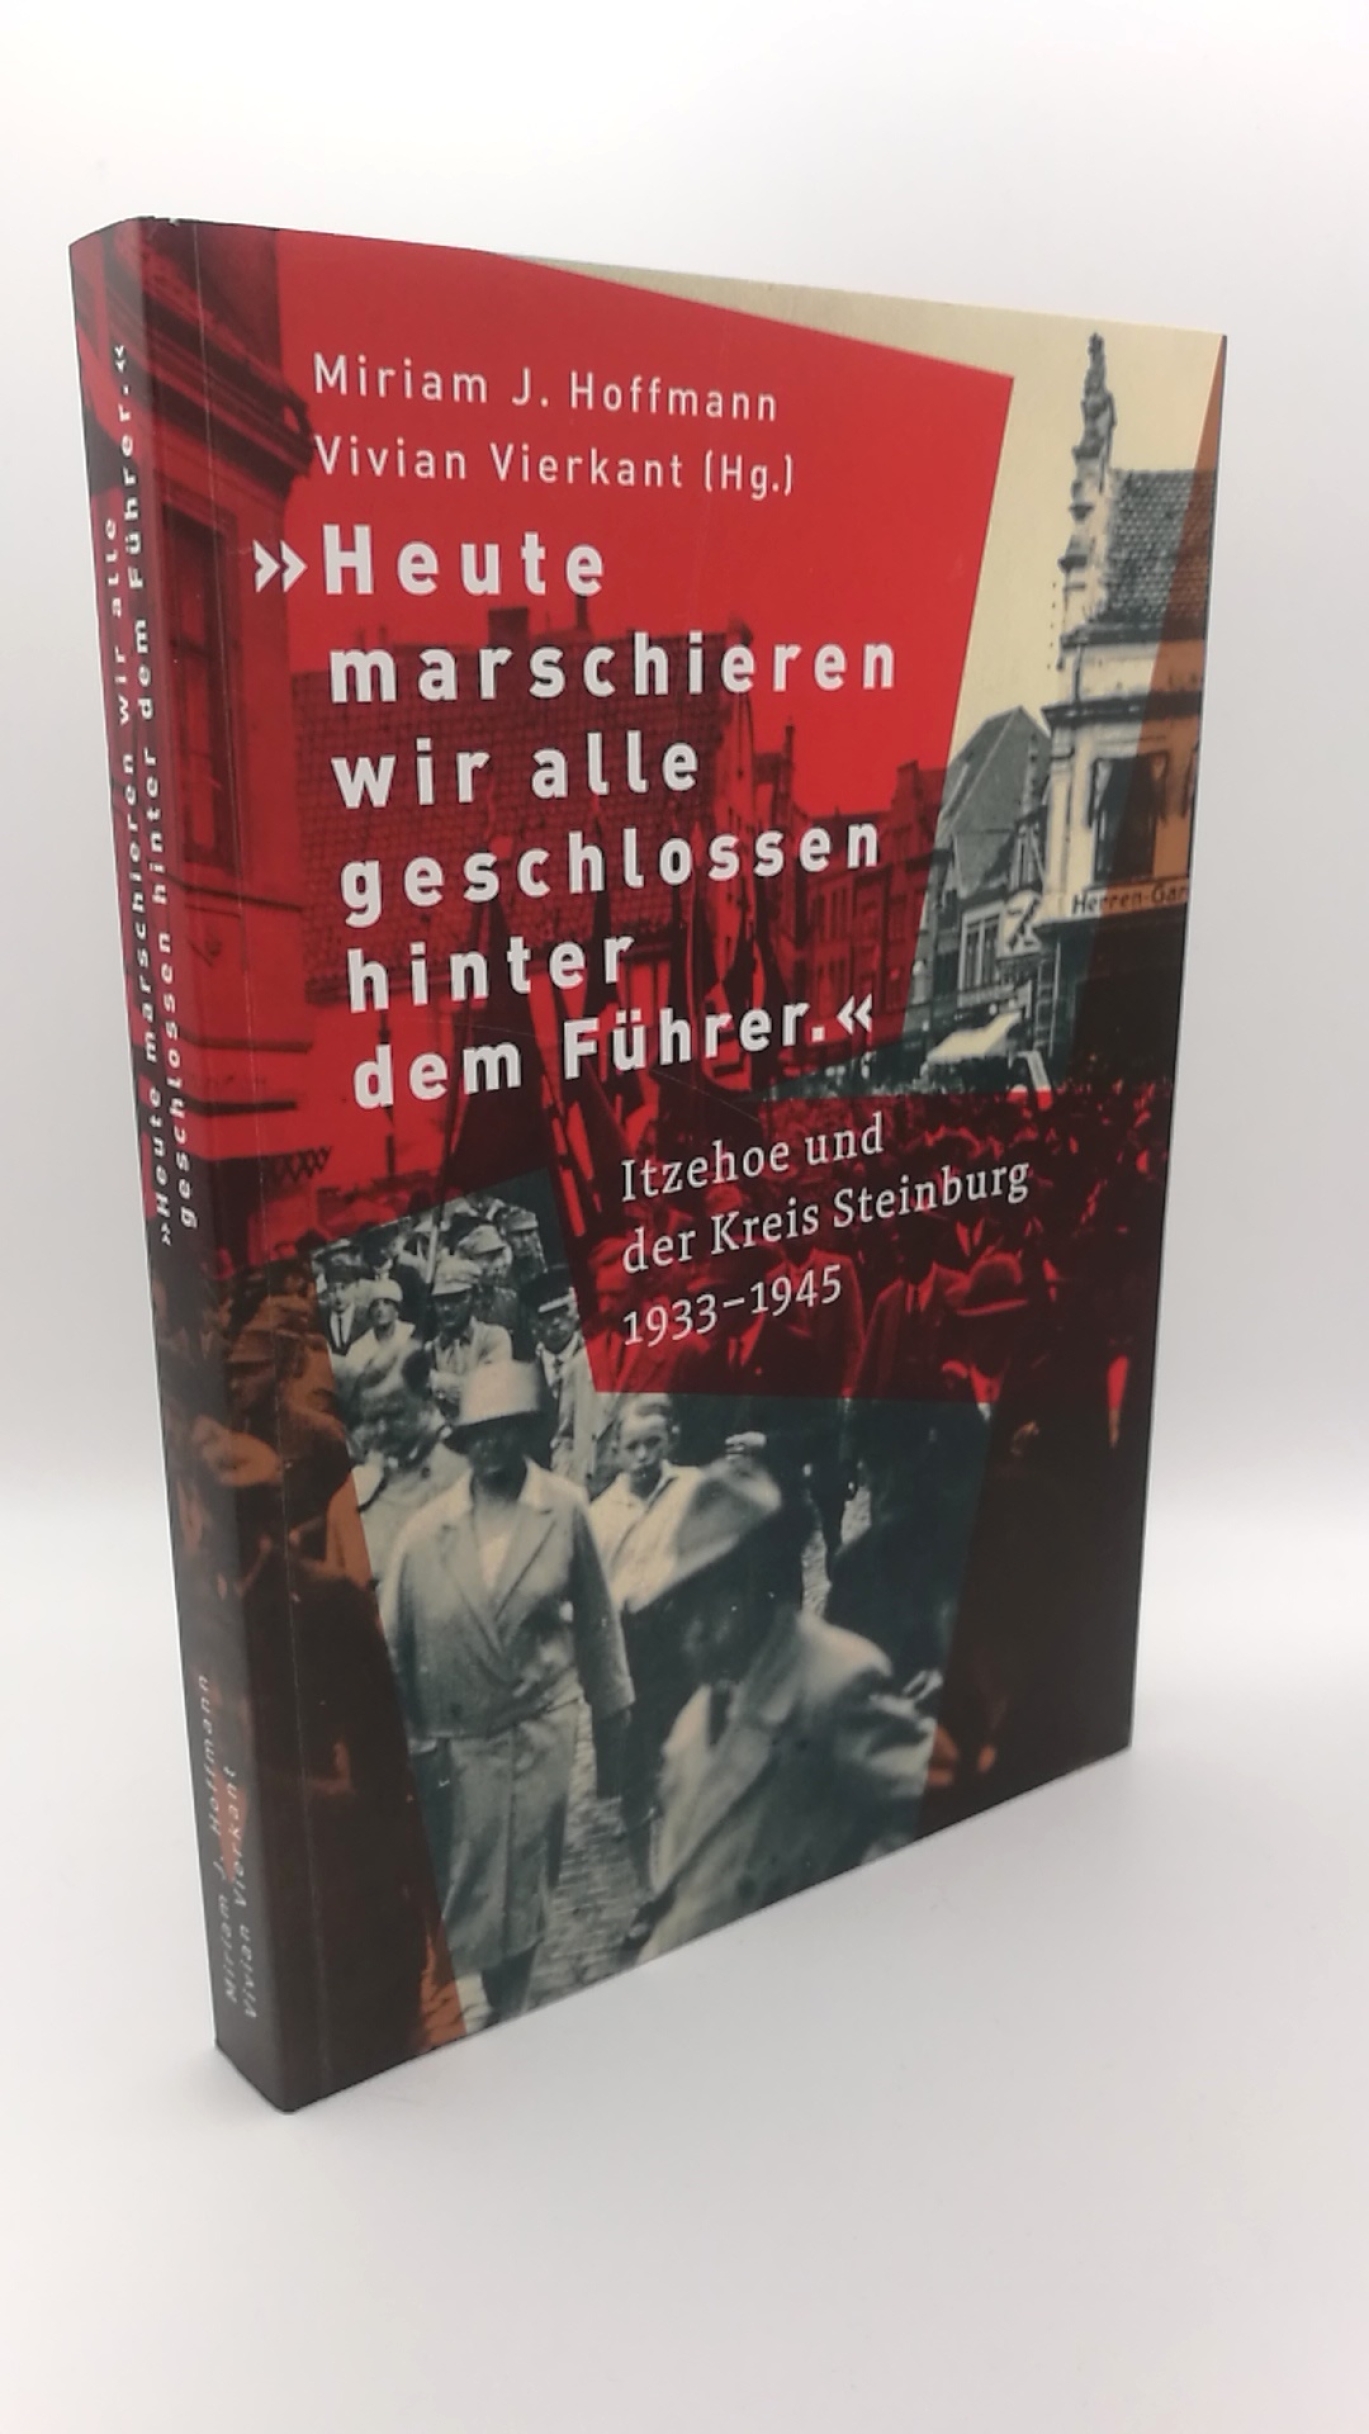 Hoffmann, Miriam J. (Herausgeber): "Heute marschieren wir alle geschlossen hinter dem Führer" Itzehoe und der Kreis Steinburg 1933-1945